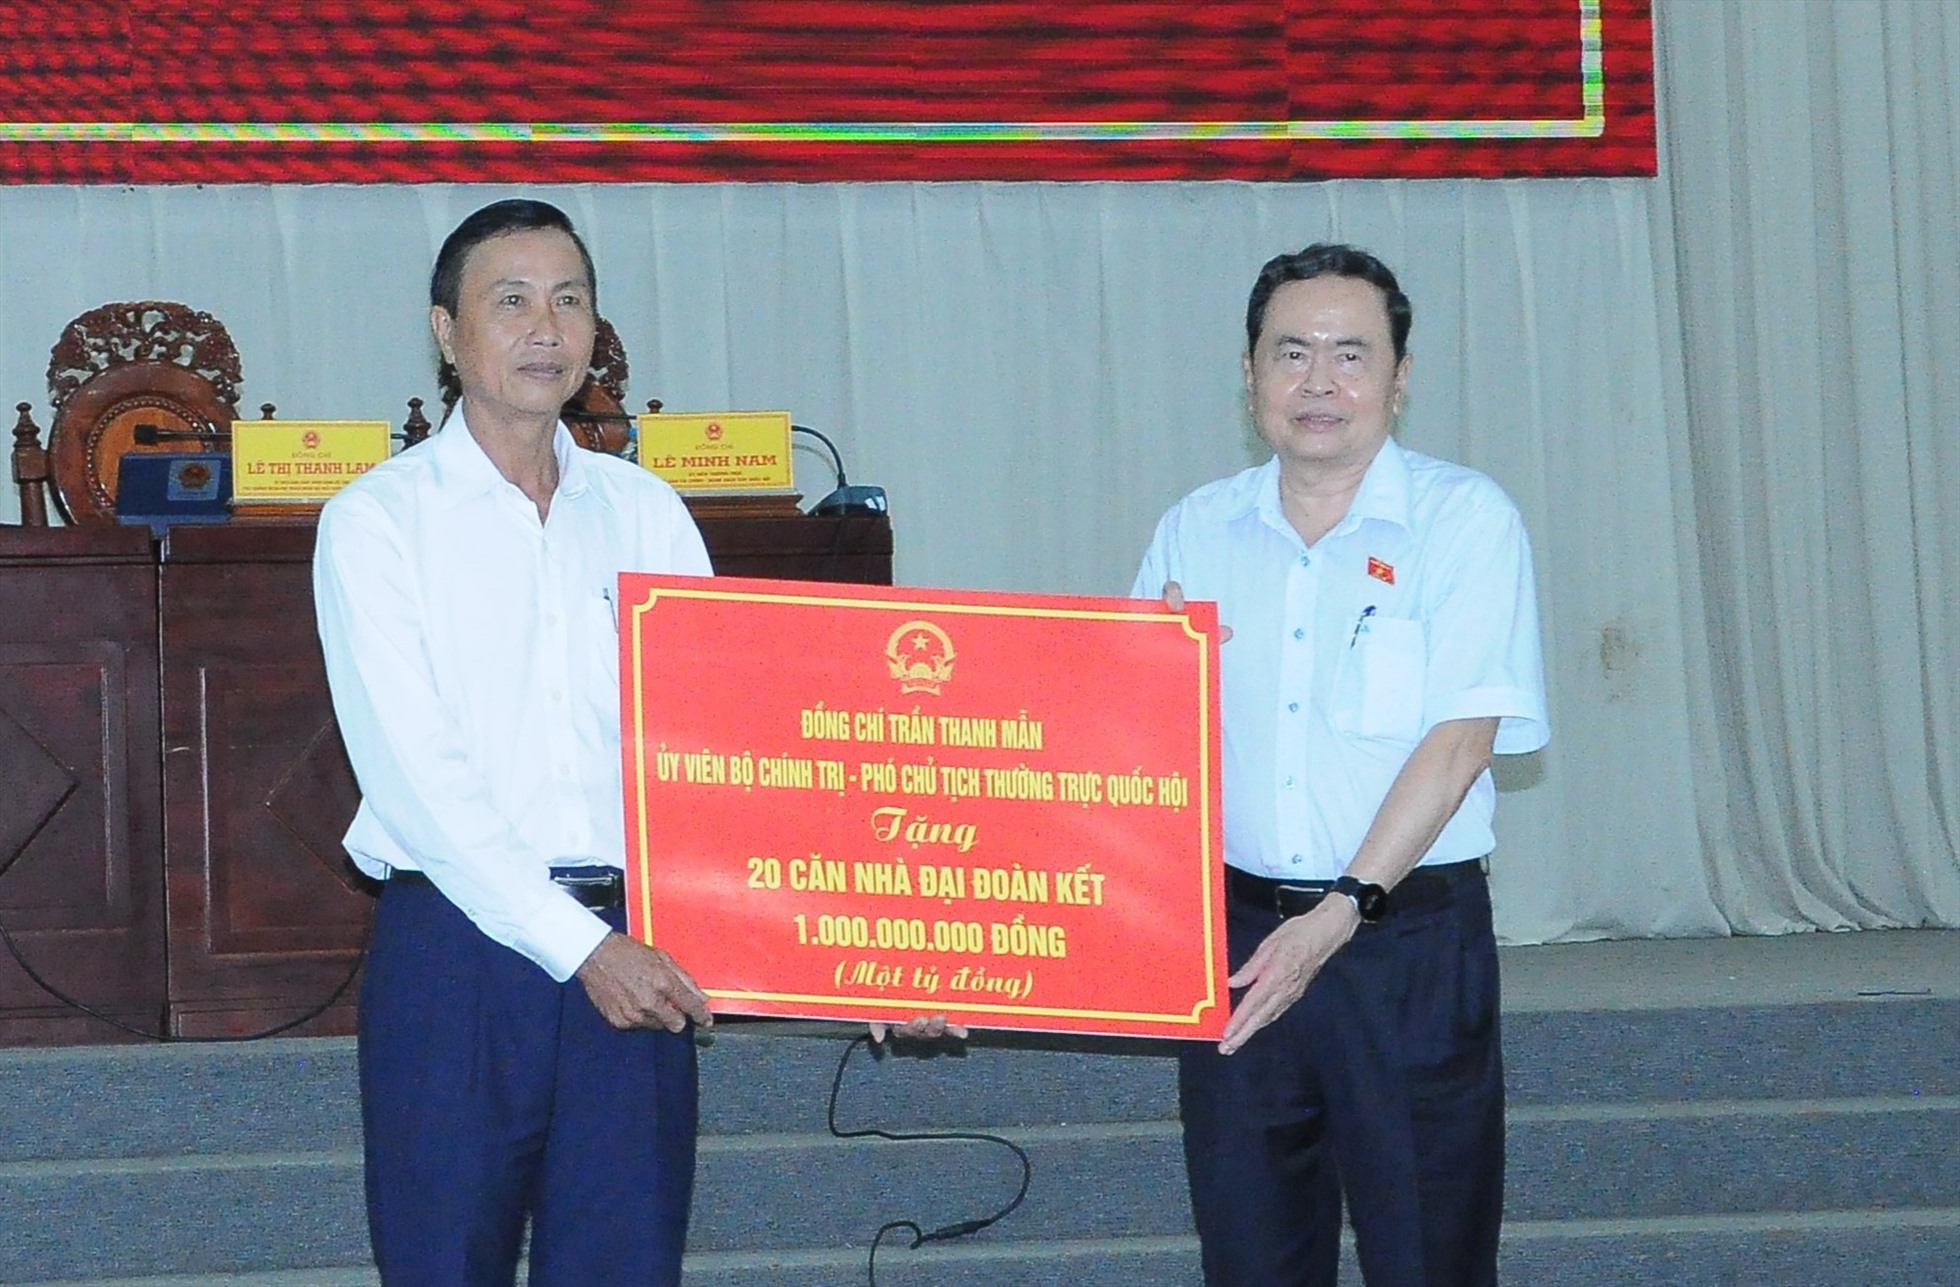 Phó Chủ tịch Thường trực Quốc hội Trần Thanh Mẫn trao 20 căn nhà Đại đoàn kết cho các hộ nghèo thành phố Ngã Bảy. Ảnh: Tạ Quang